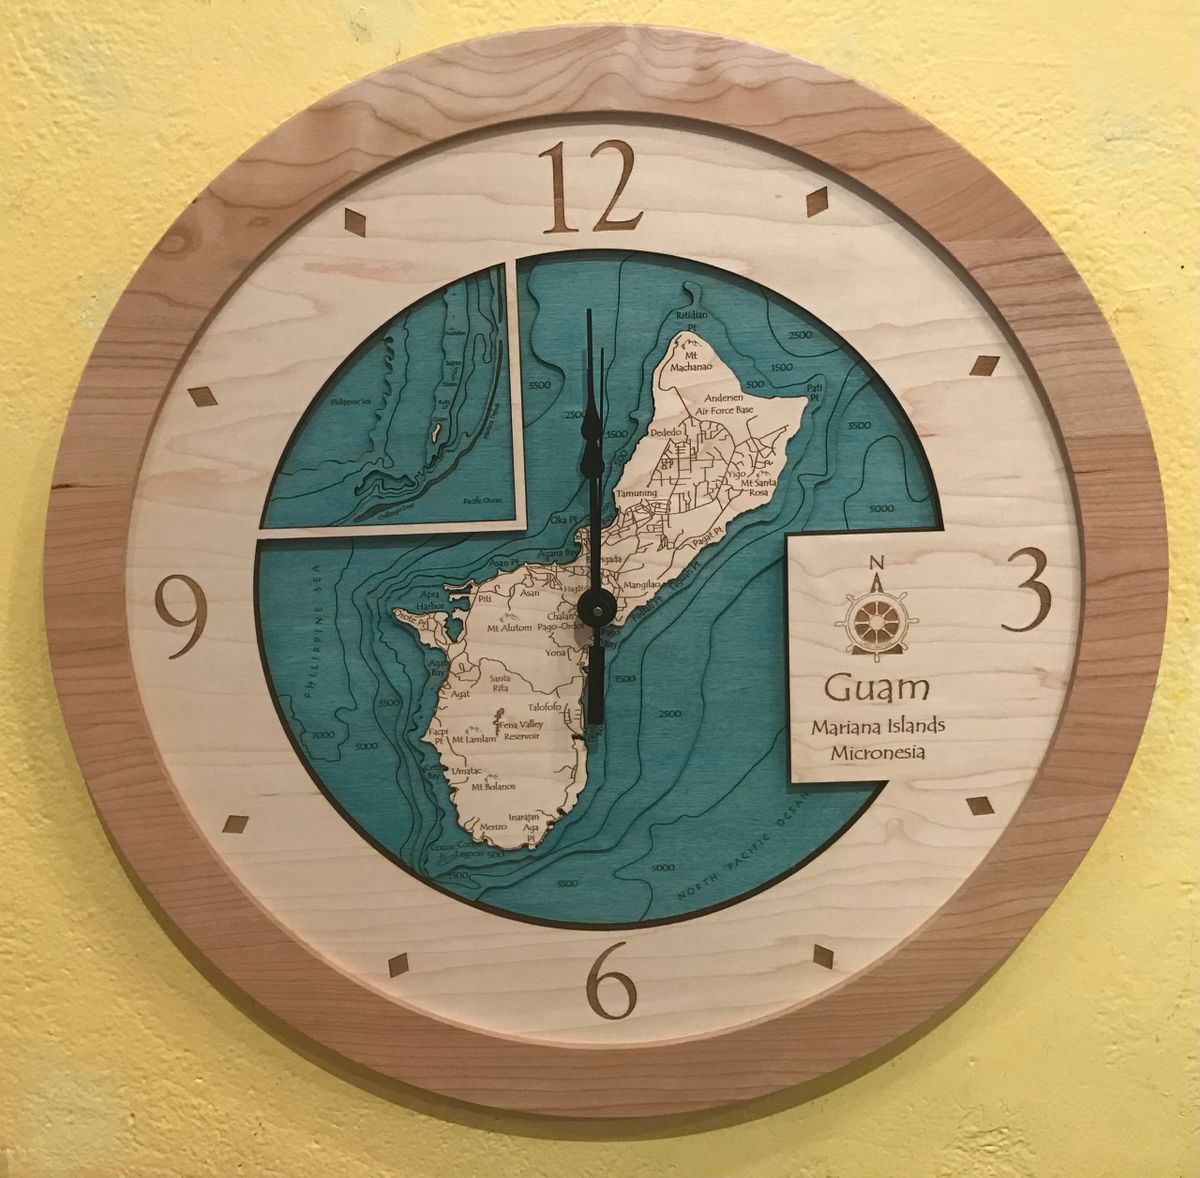 Guam clock